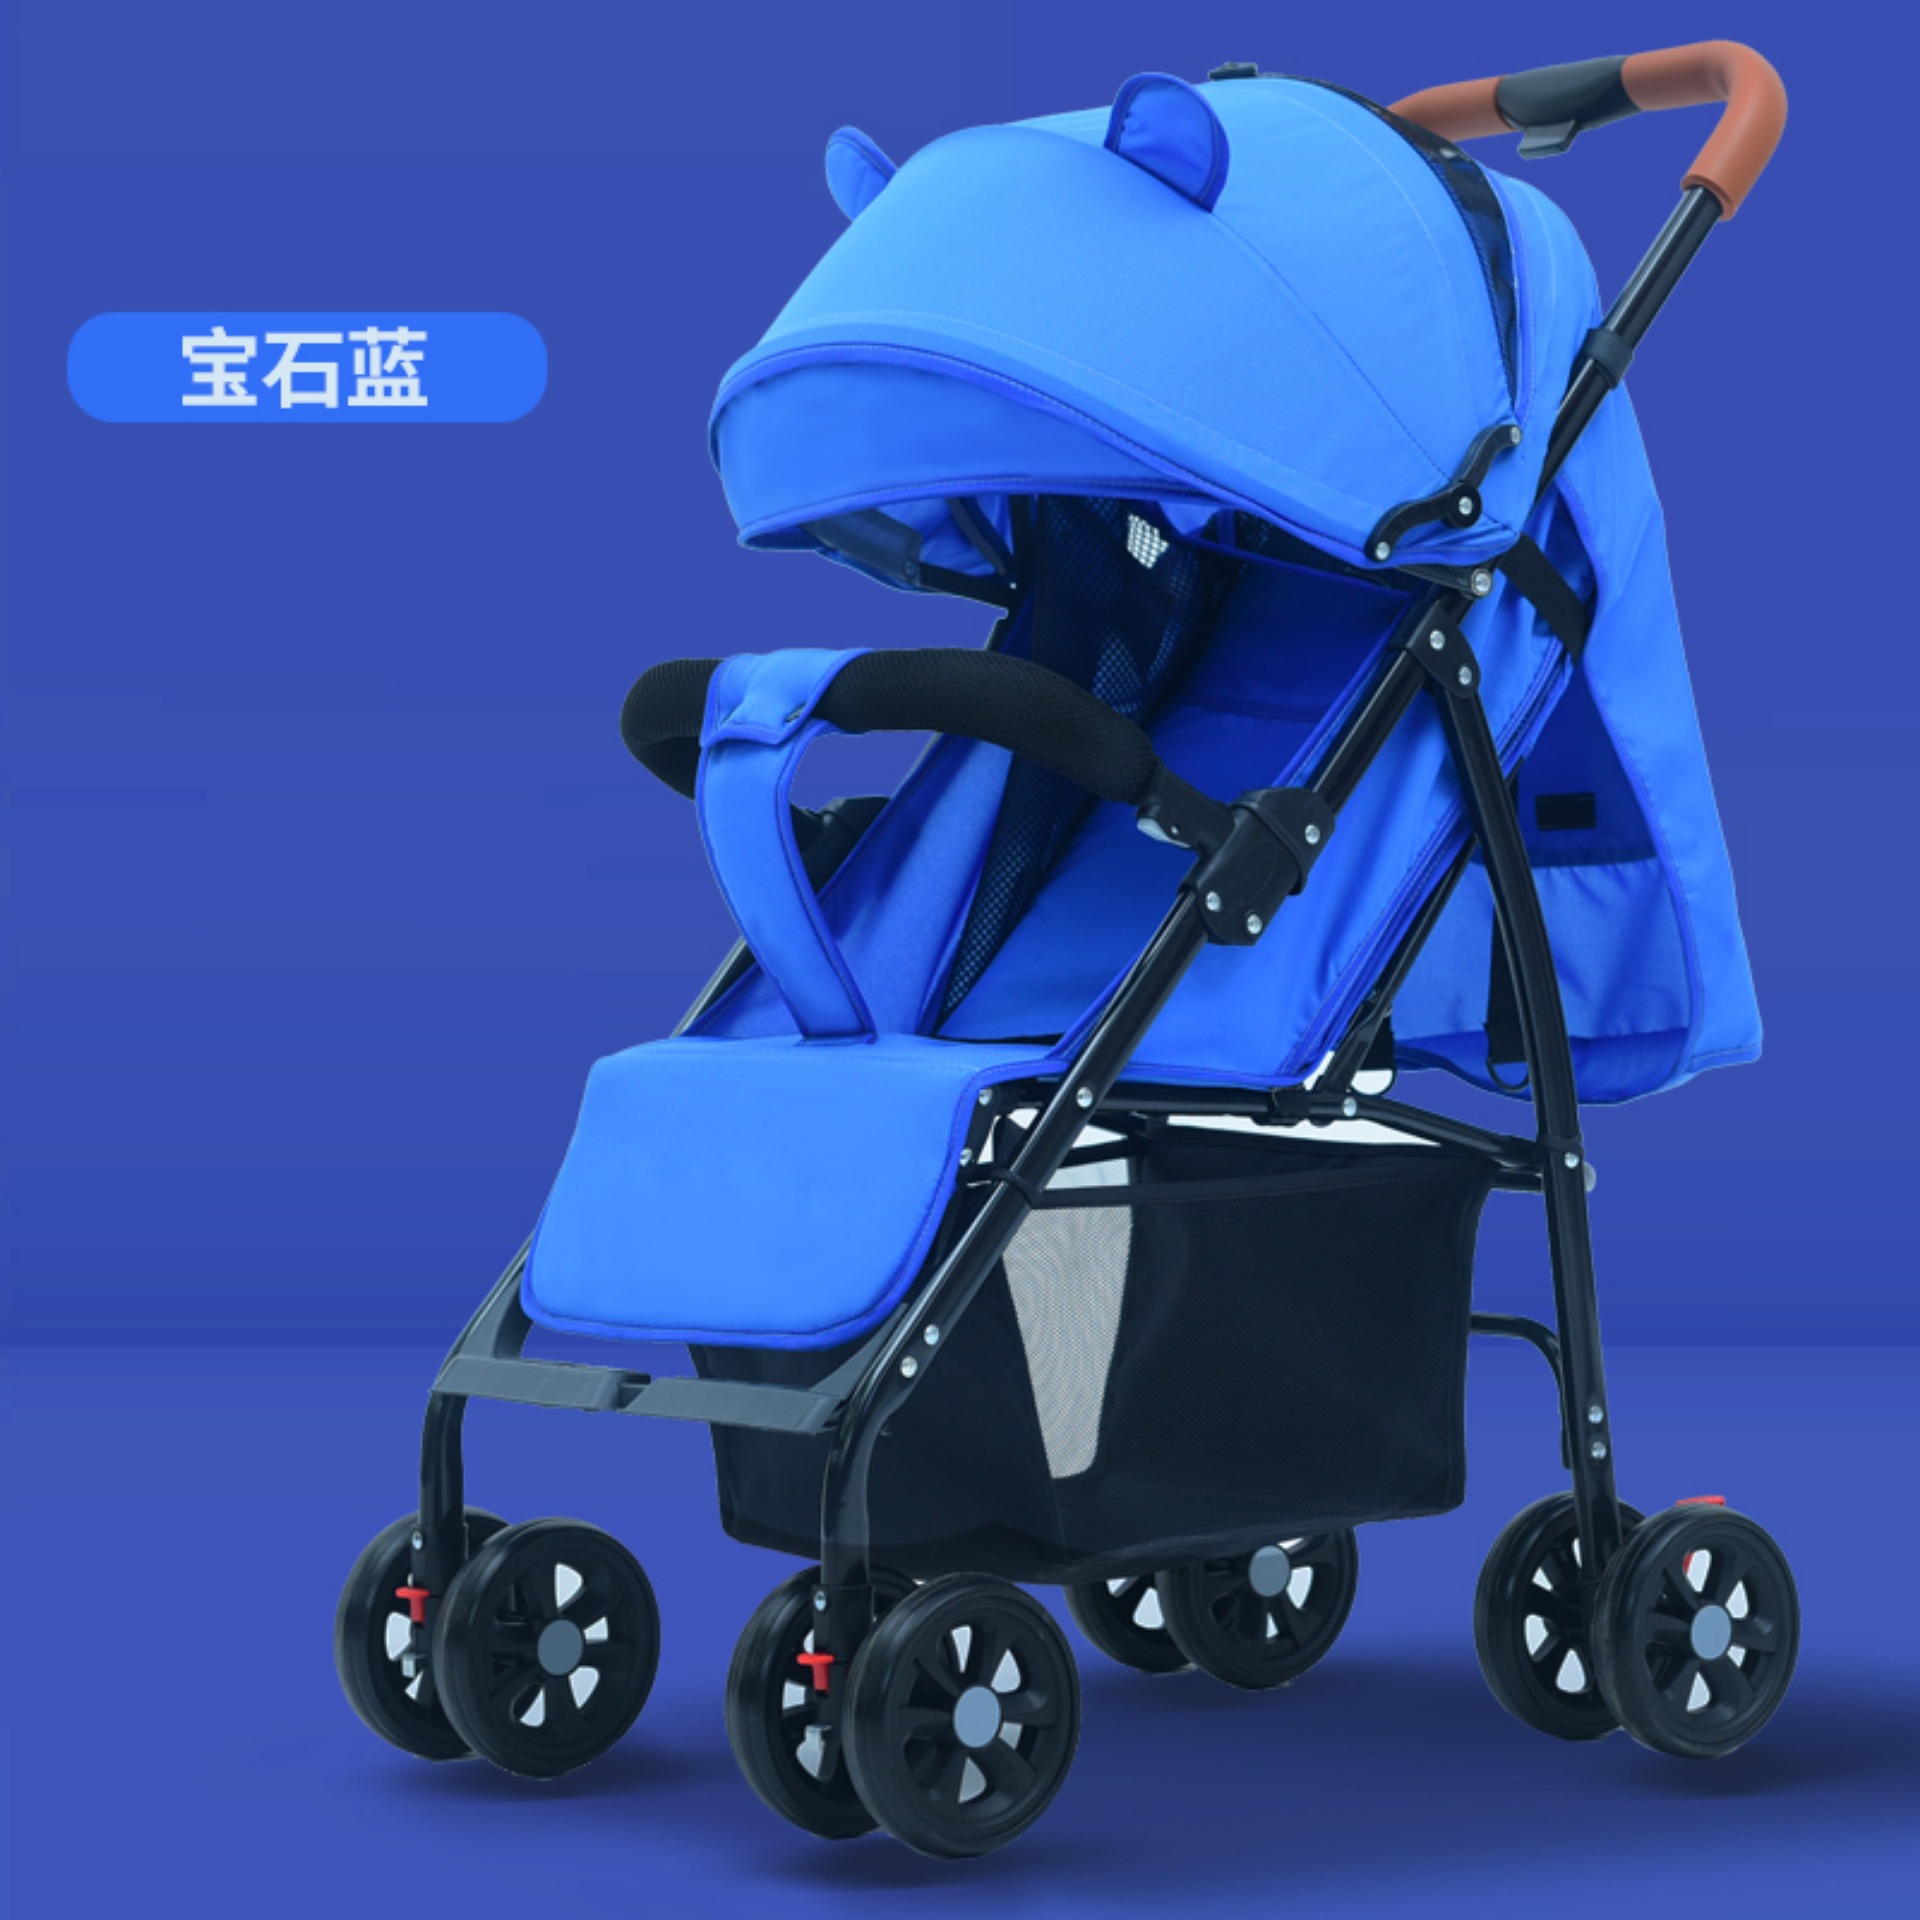 รถเข็นเด็ก Stroller 19 | HongThai OnlineShop รถเข็นเด็ก 4 ล้อ น้ำหนักเบา มีหลังคาปรับได้ 3 ระดับ ทำจากผ้าระบายอากาศเป็นอย่างดี